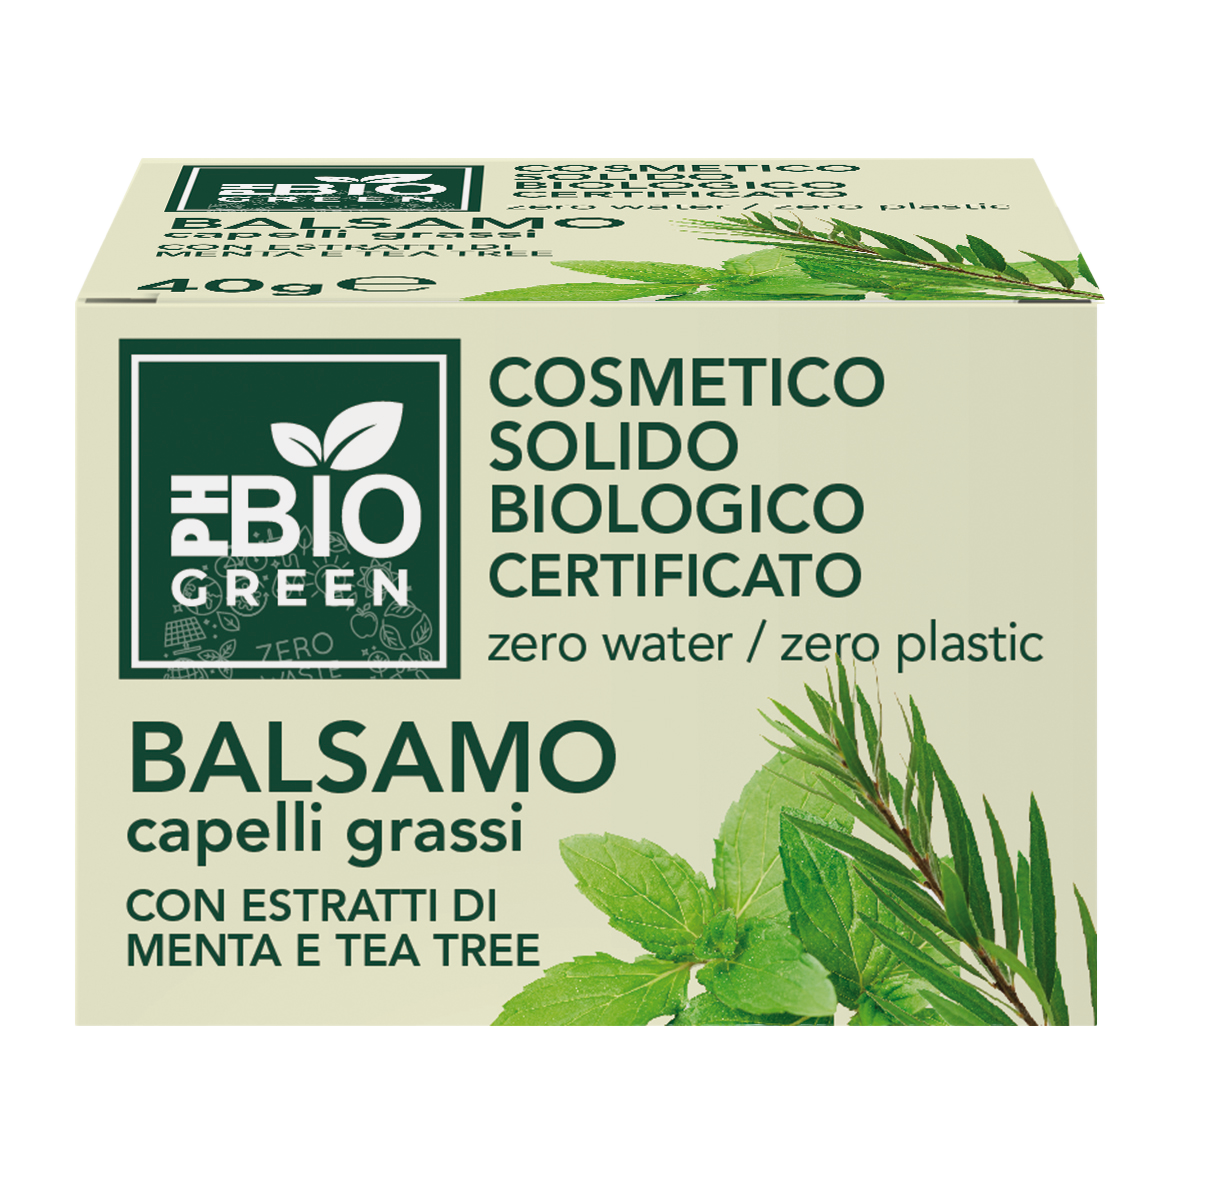 PH BIO Green - Balsamo per Capelli Grassi